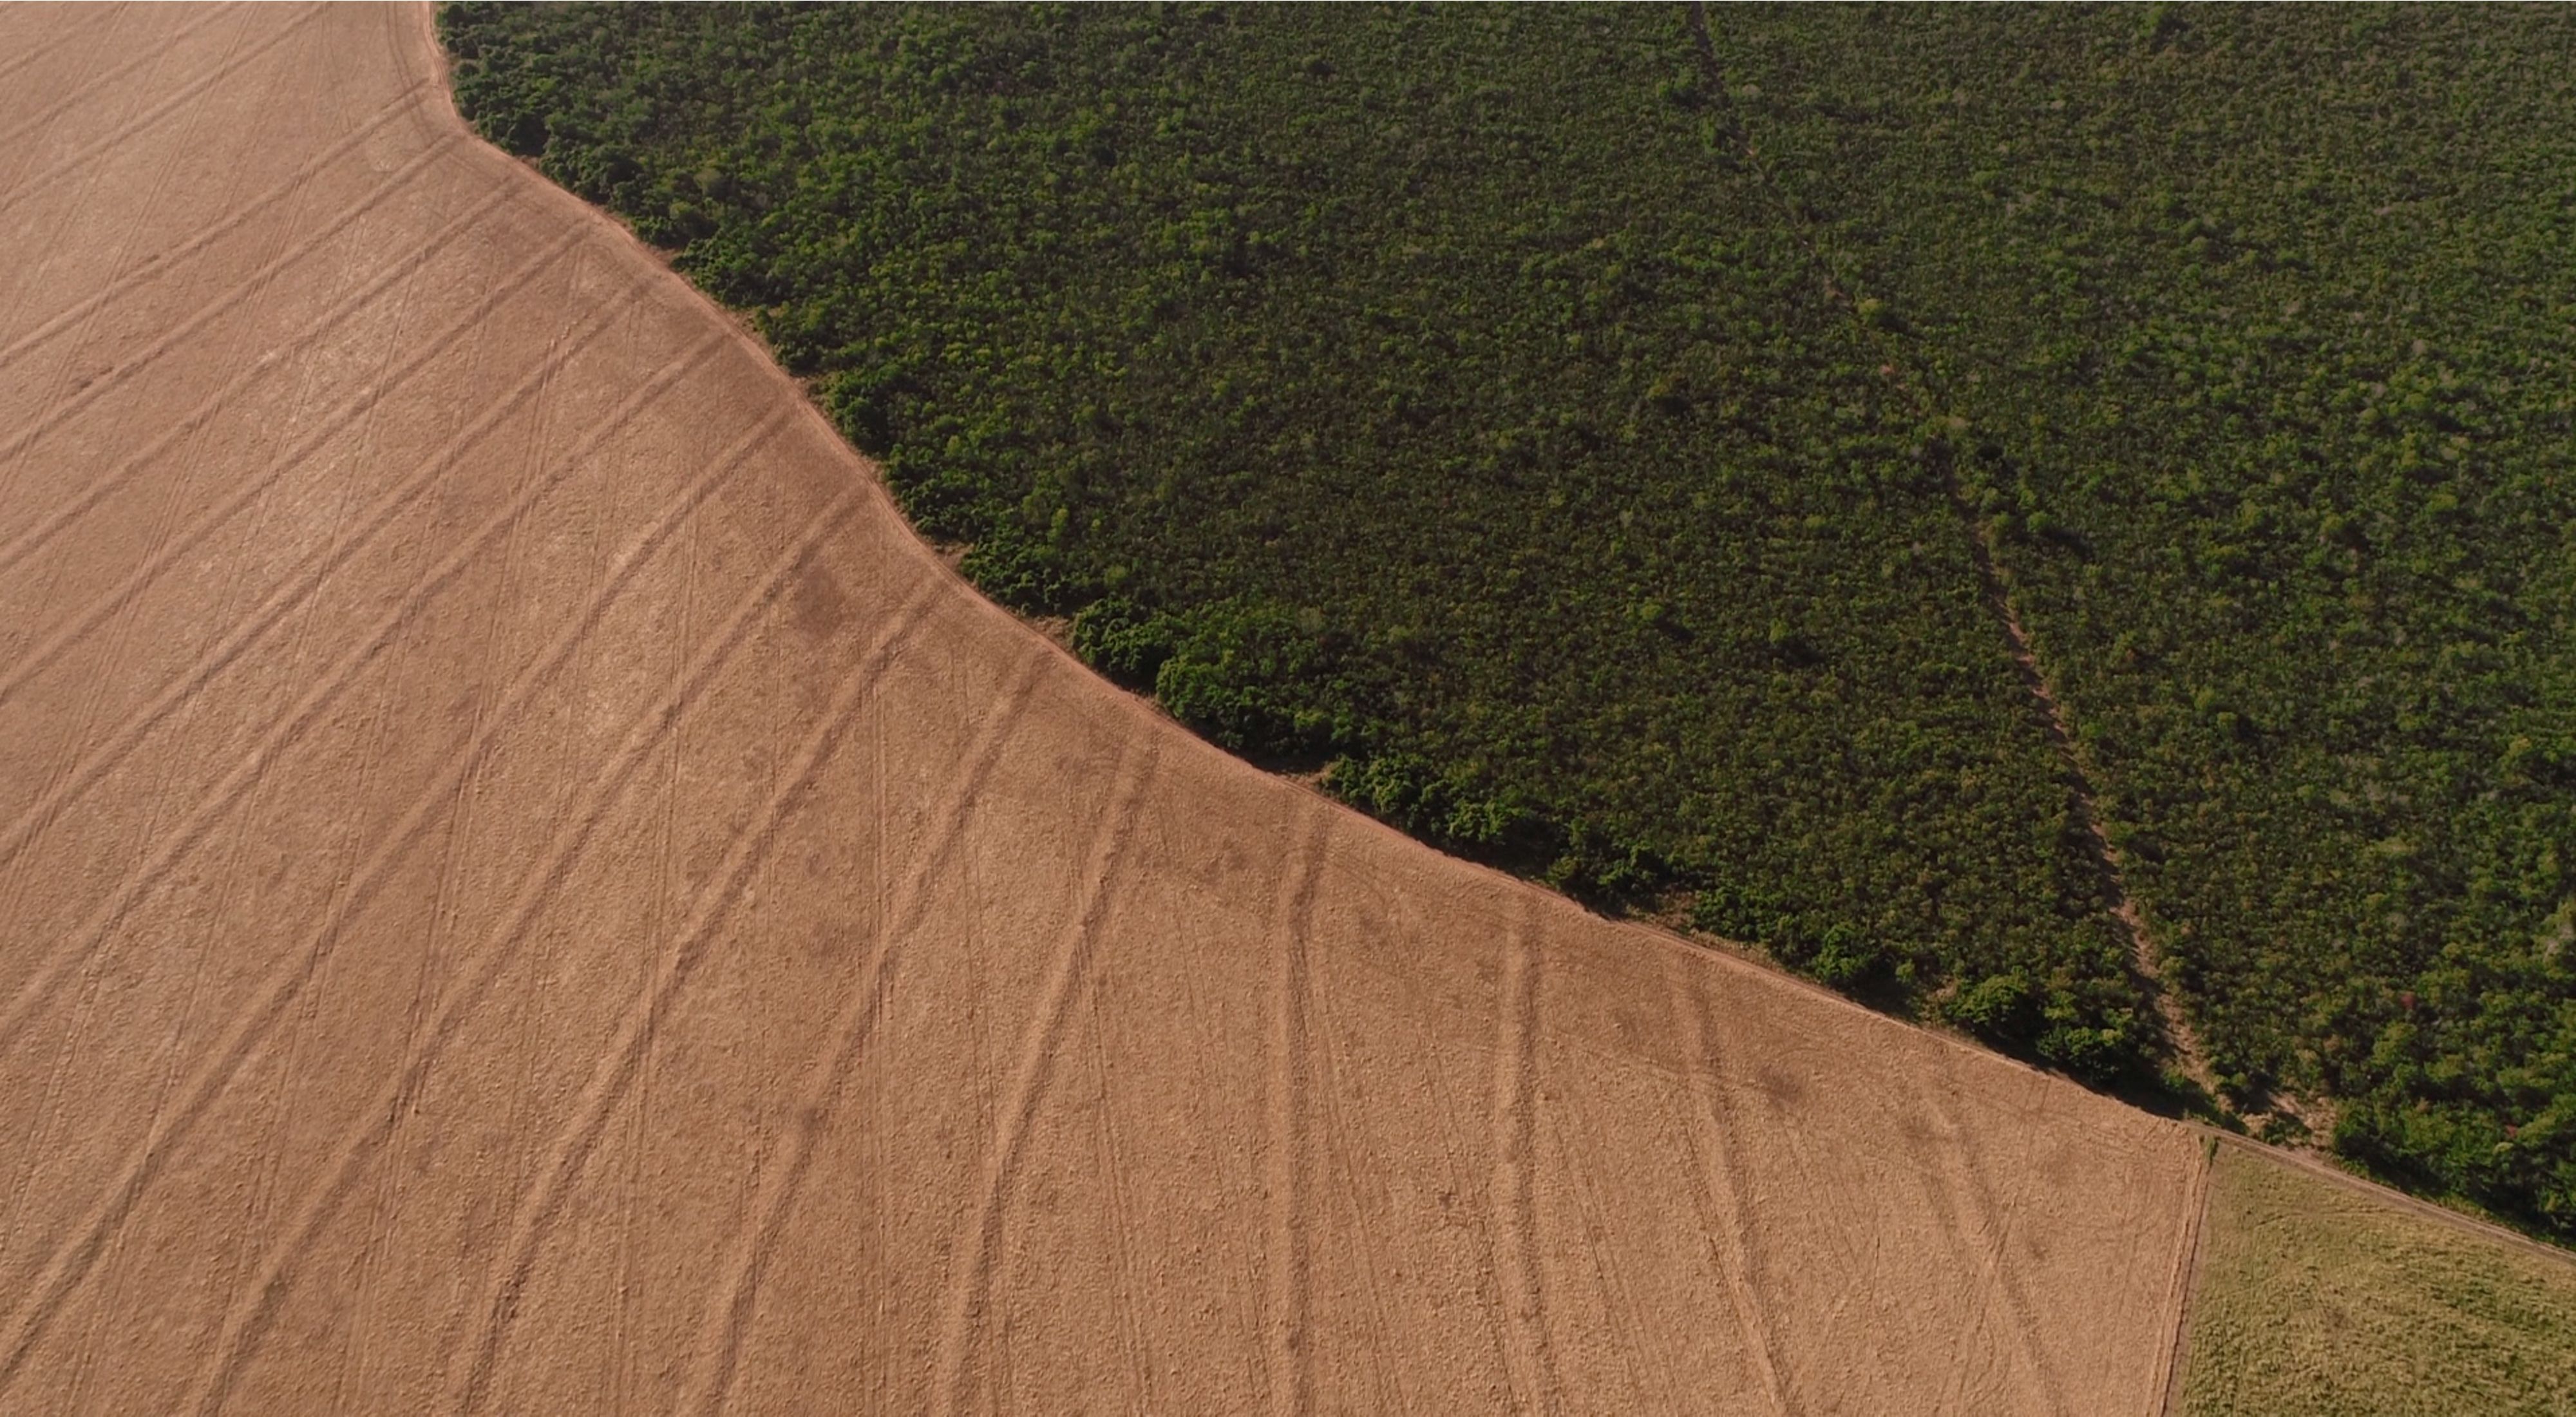 Soy fields in Itaituba, Pará, Brazil